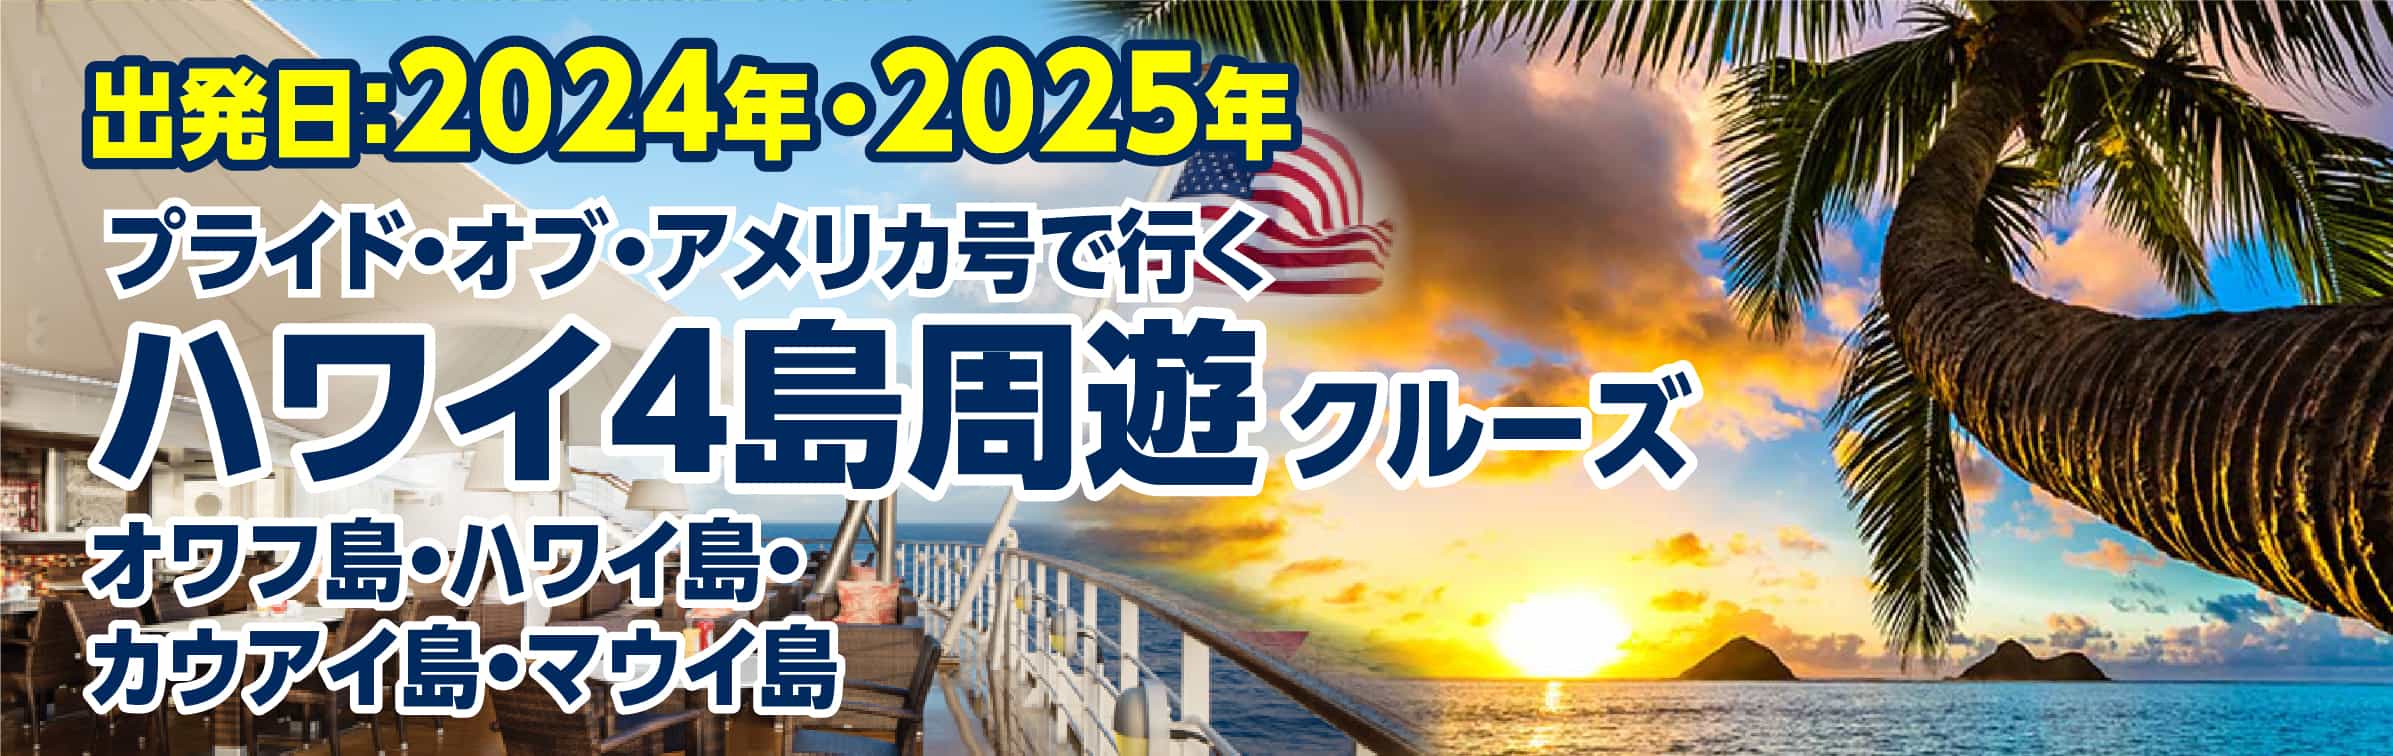 2022年 プライドオブアメリカ号 ハワイ特集